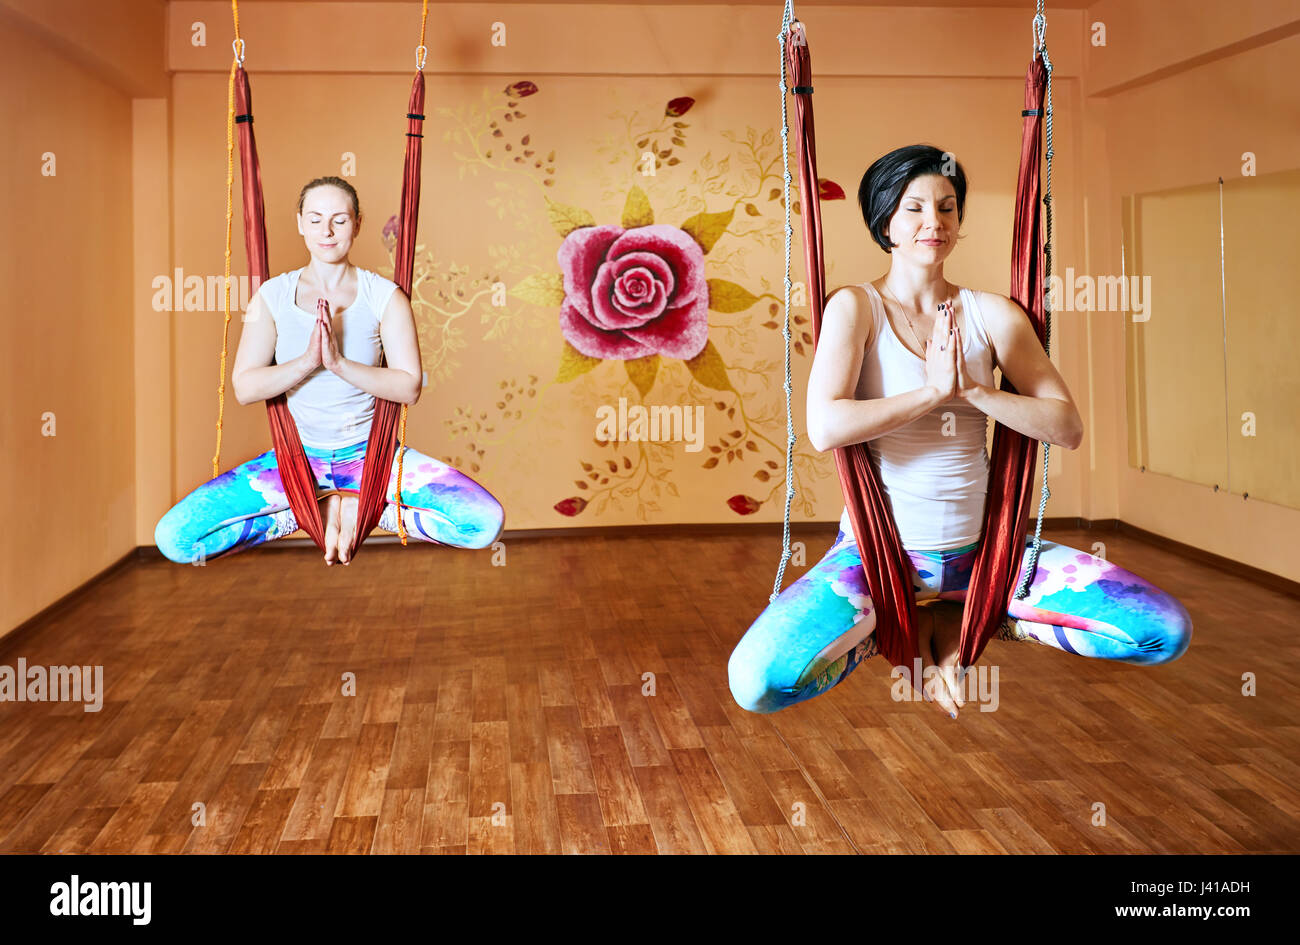 Zwei junge Frau beim Antigravity Yoga in Hängematte im Wellnessstudio mit Rose an der Wand Stockfoto